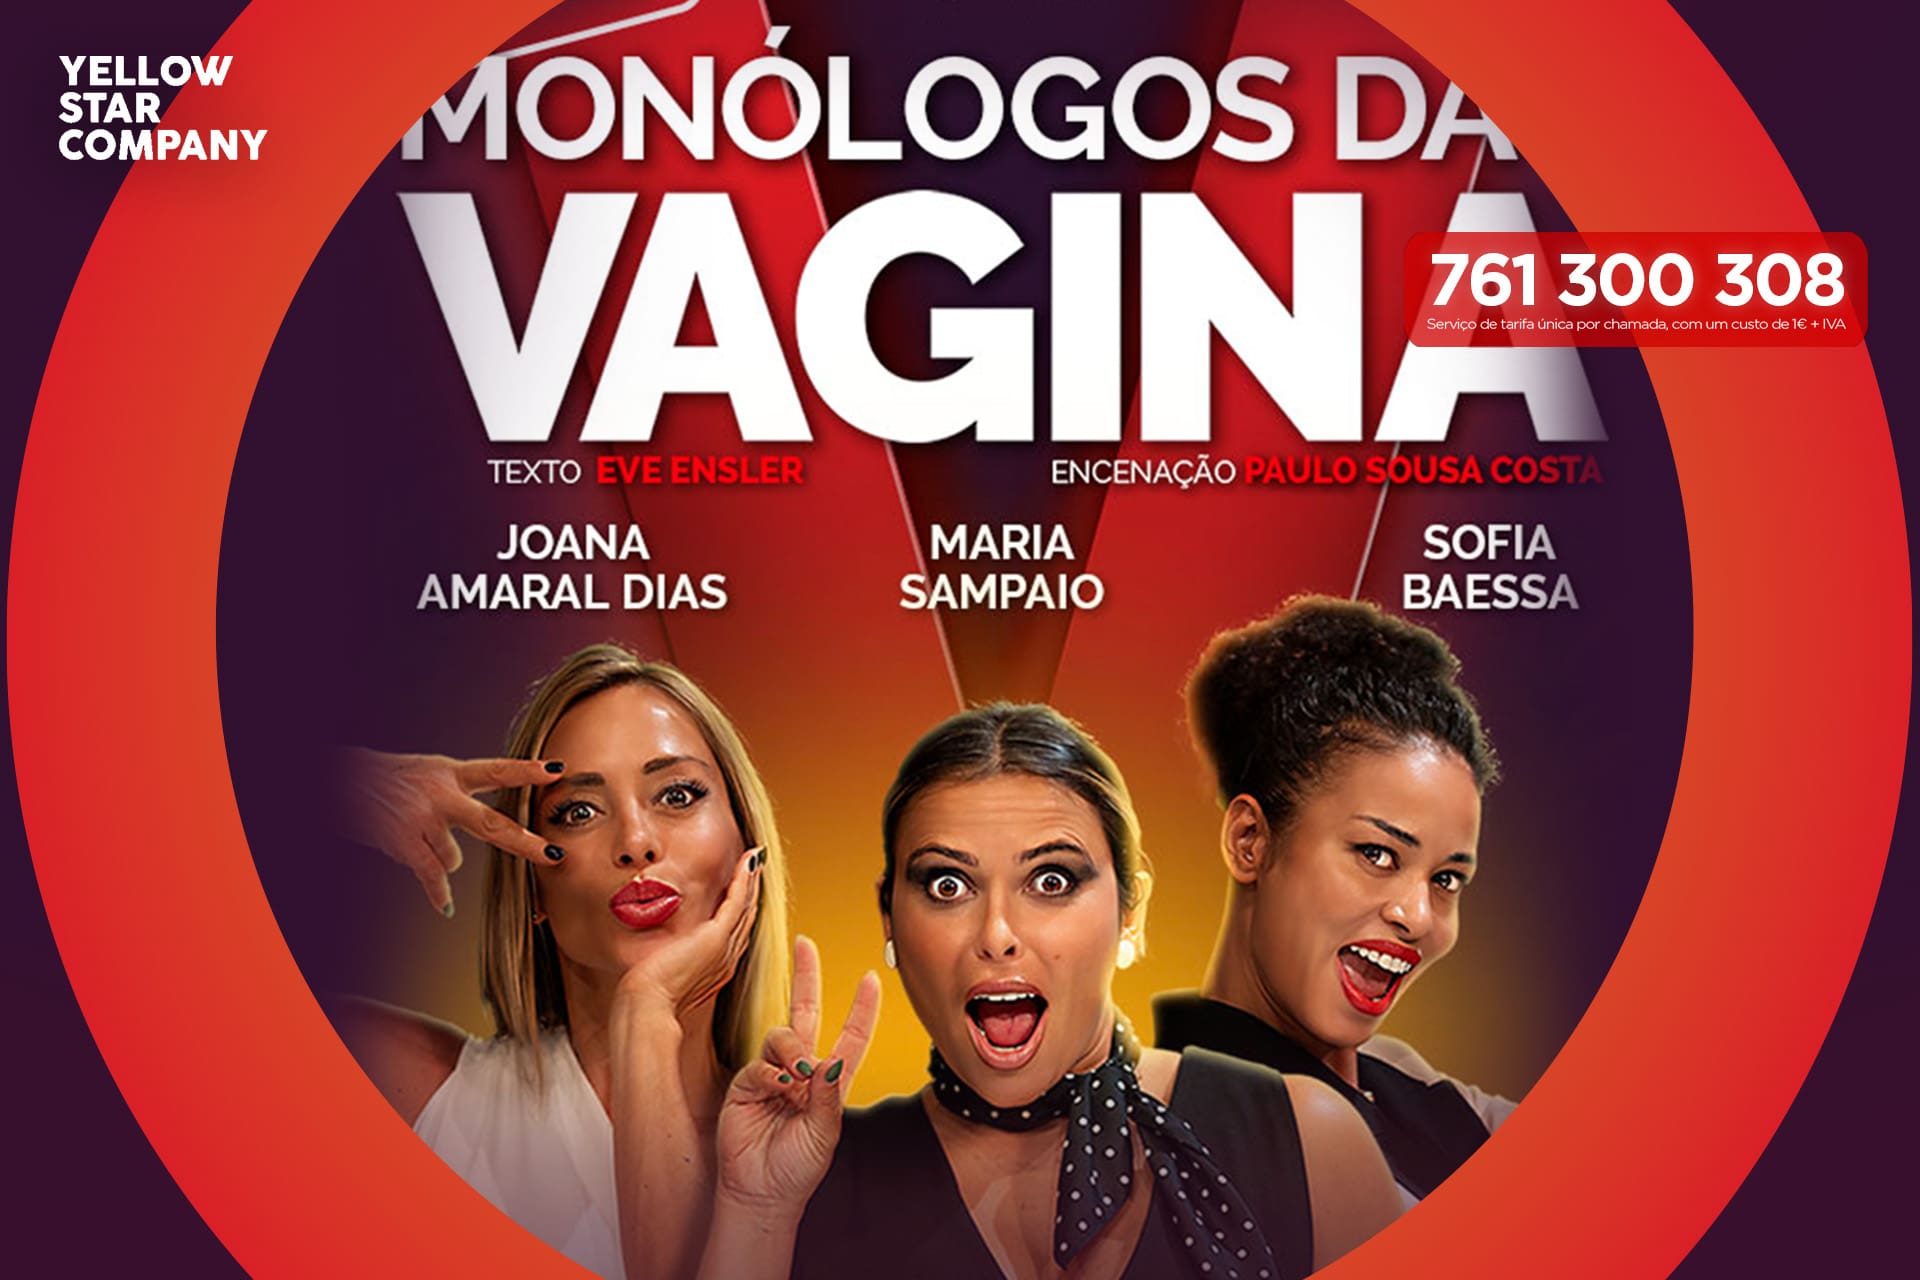 banner passatempo monólogos da vagina - A RECORD leva-o a ver a peça 'Os Monólogos da Vagina'